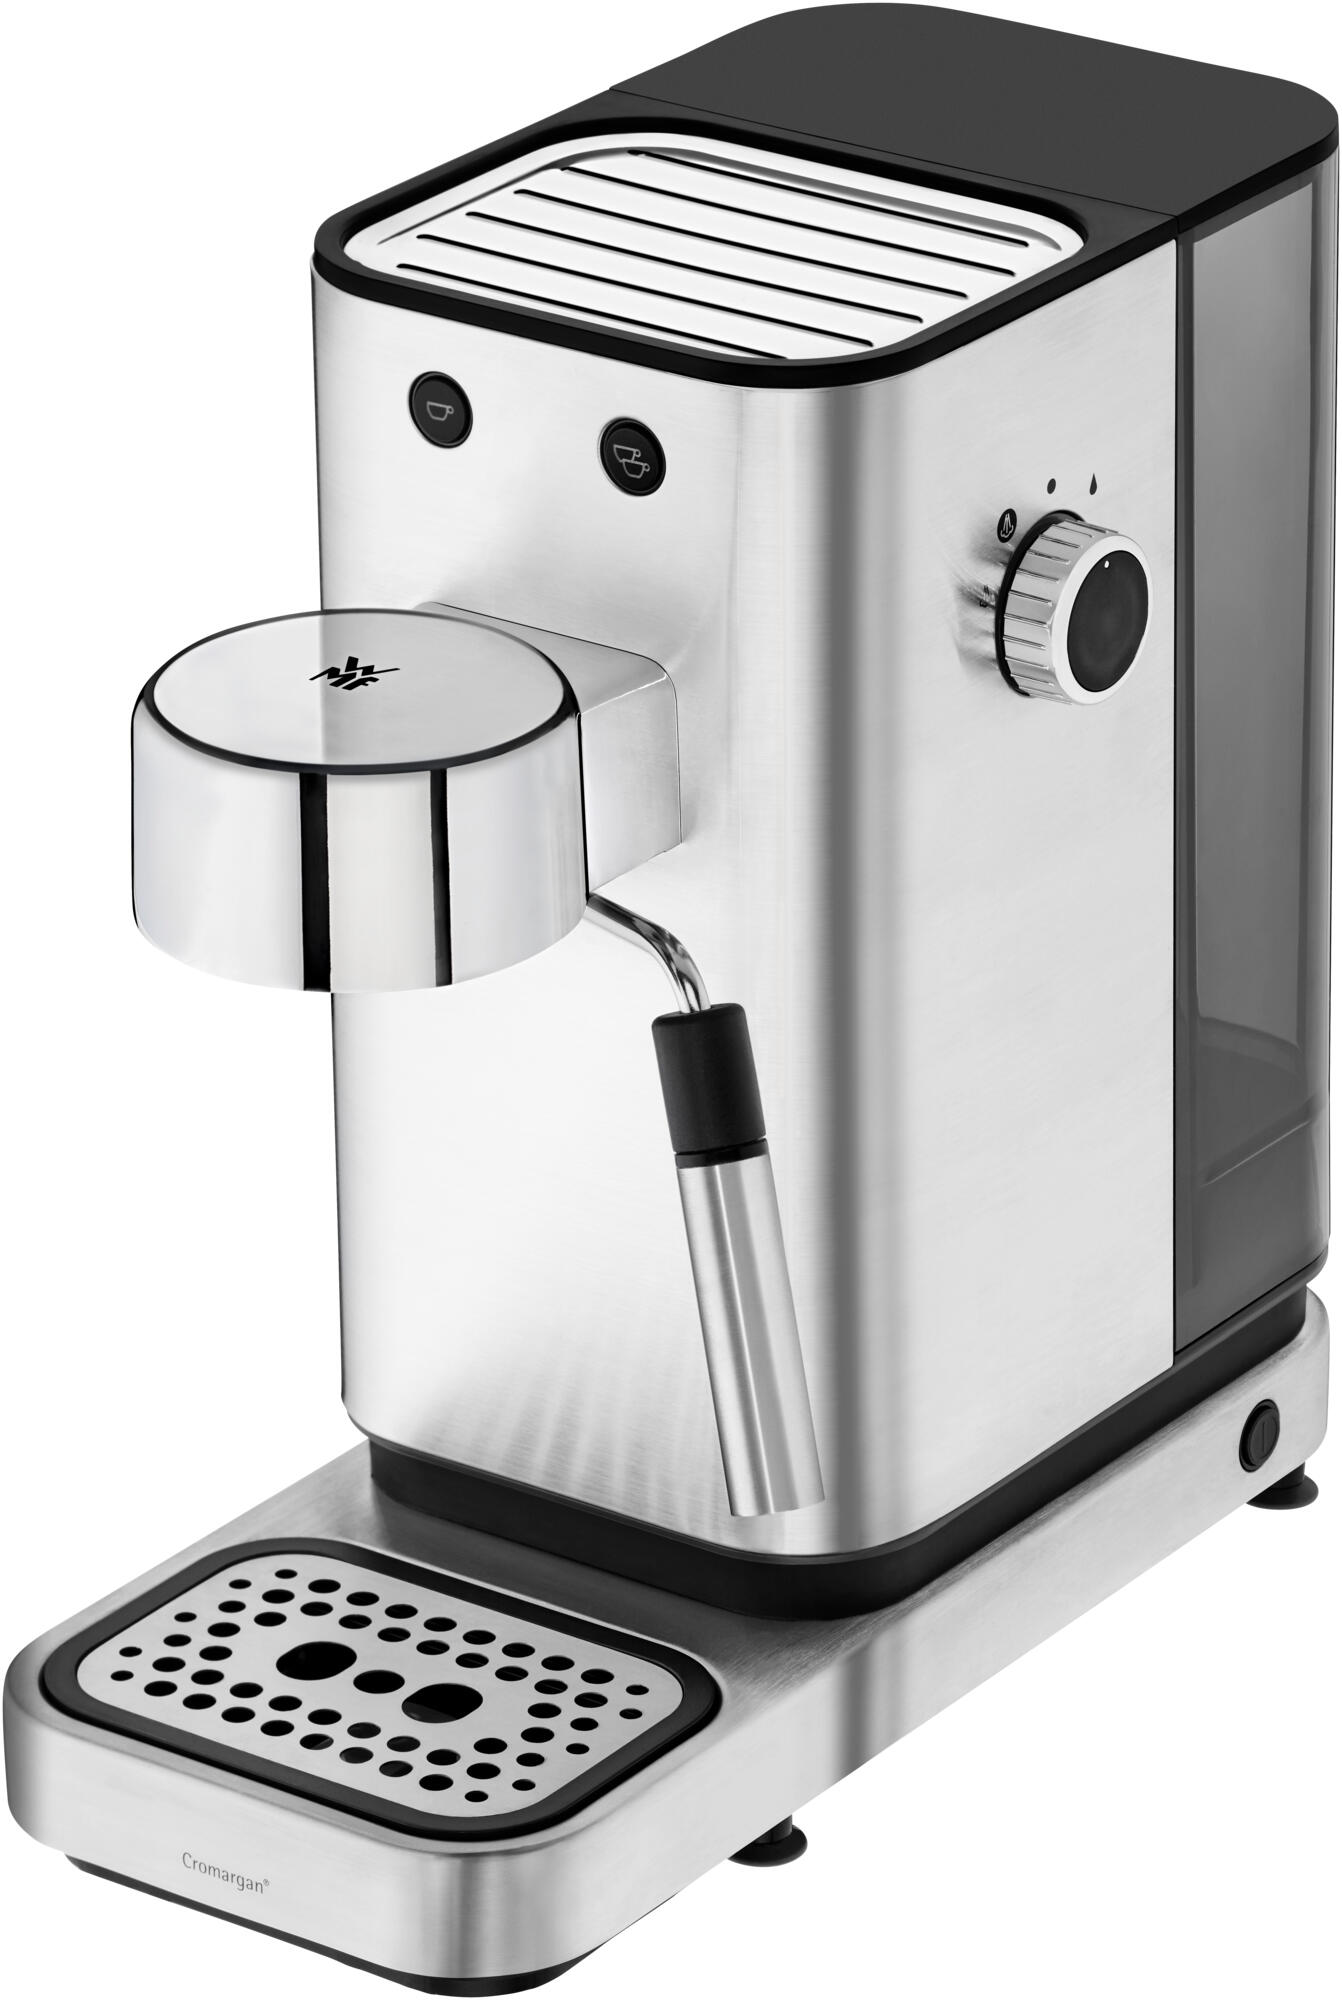 Lumero Portafilter espresso machine